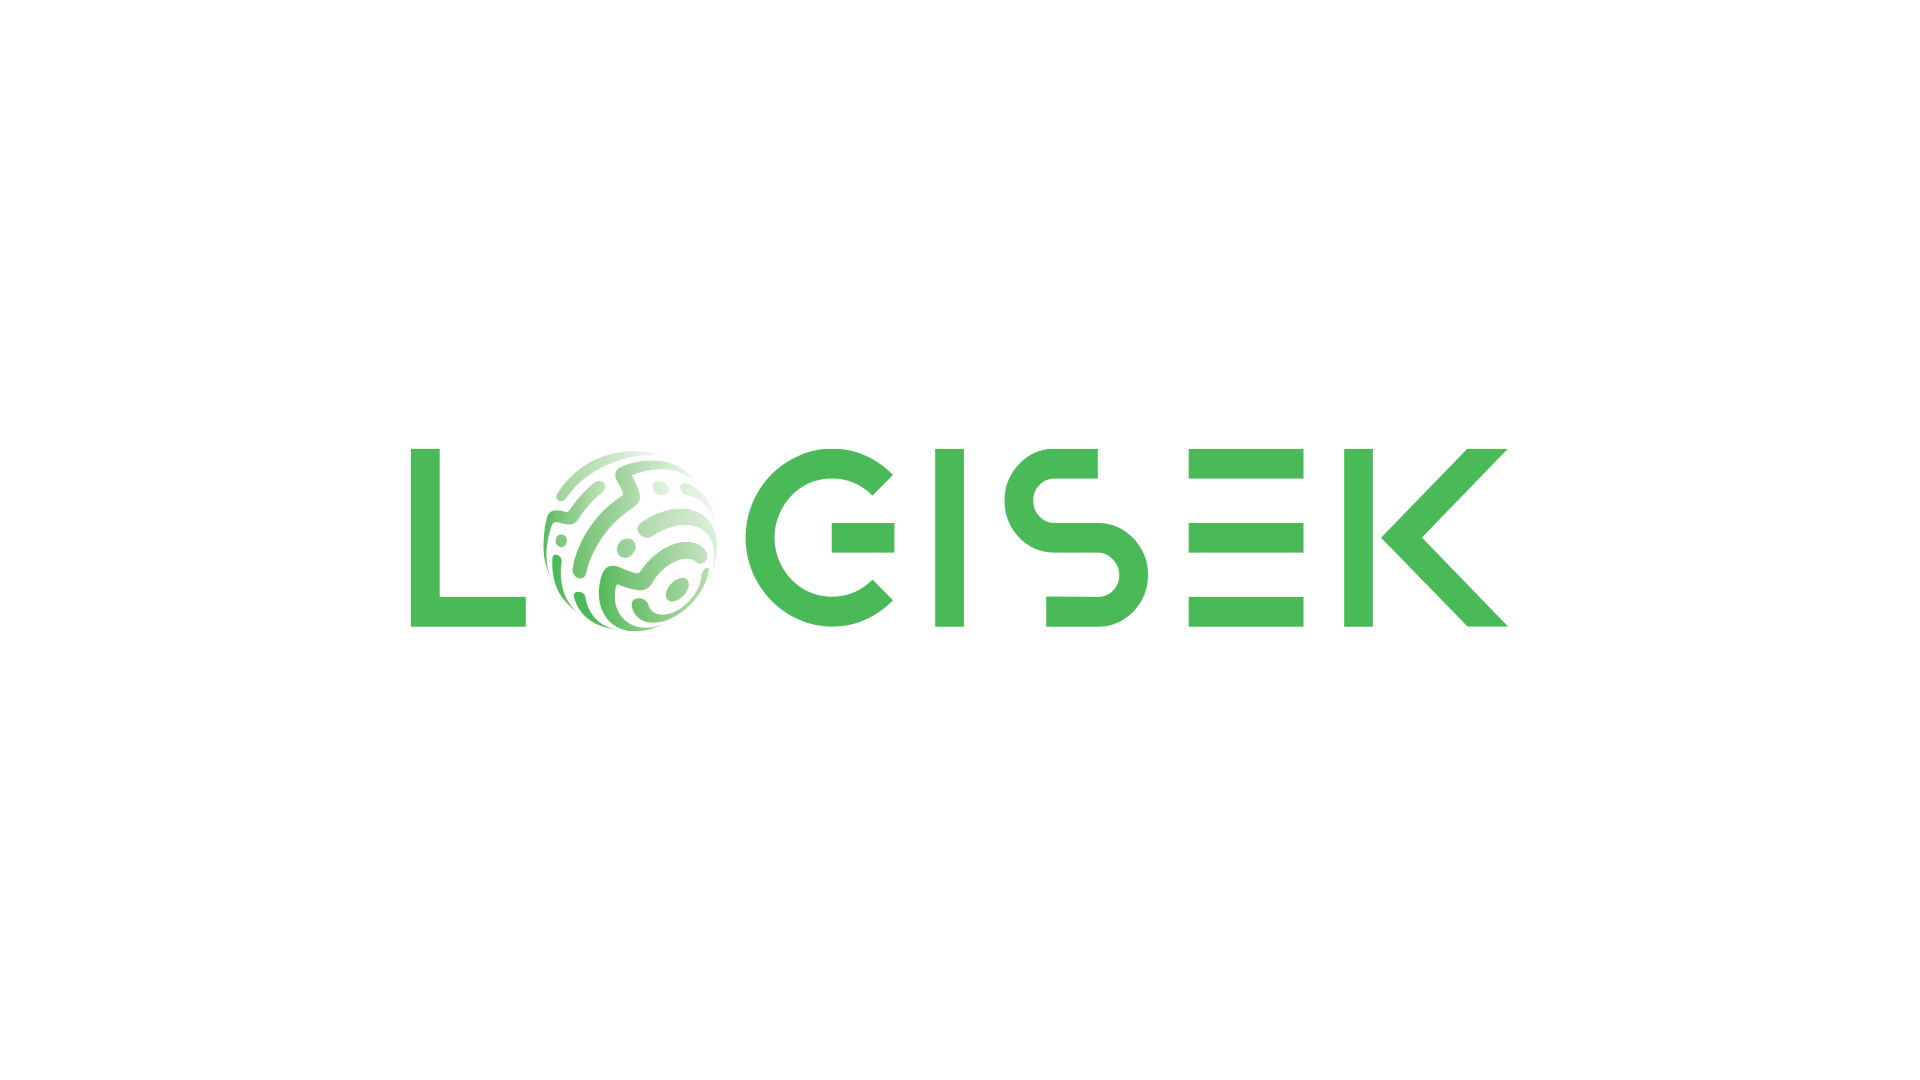 Logisek Corporate Id -Website Spirilio Graphic and Web Design